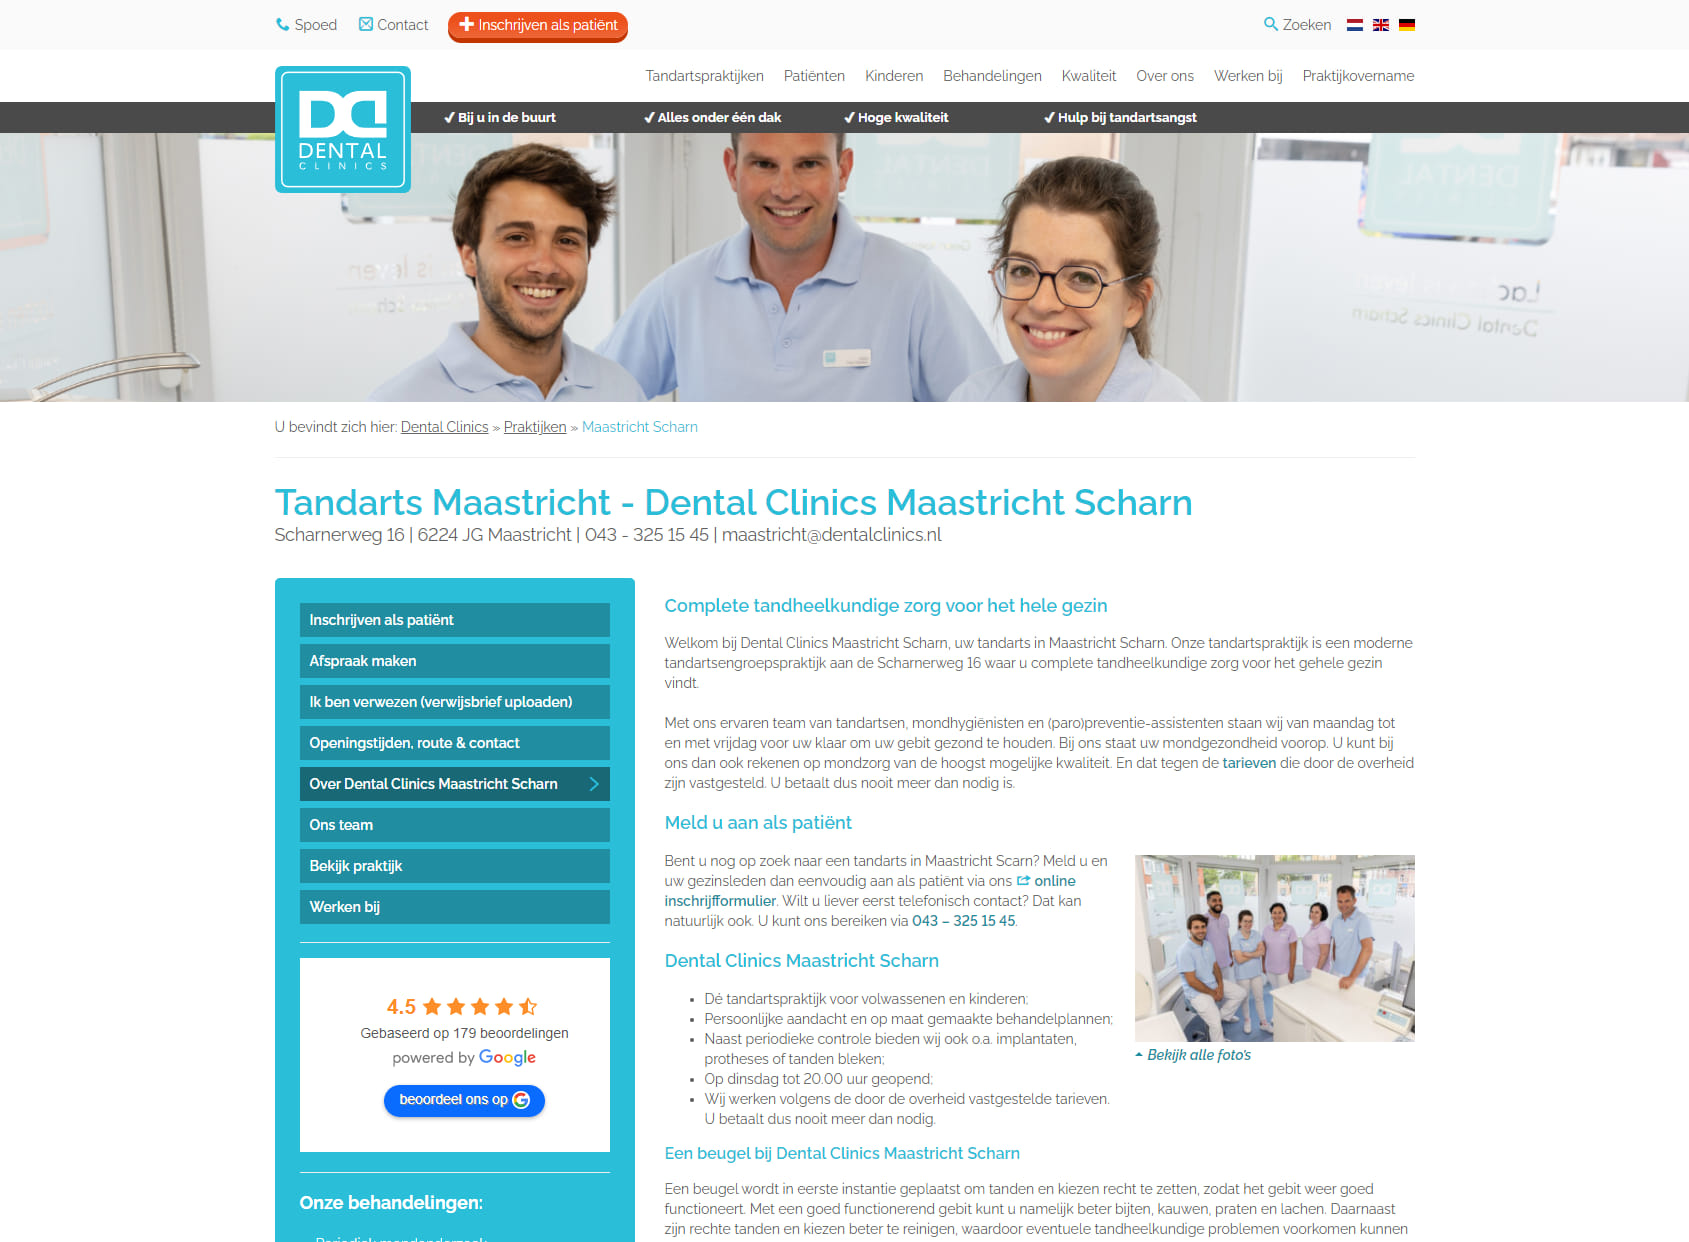 Dental Clinics Maastricht Scharn